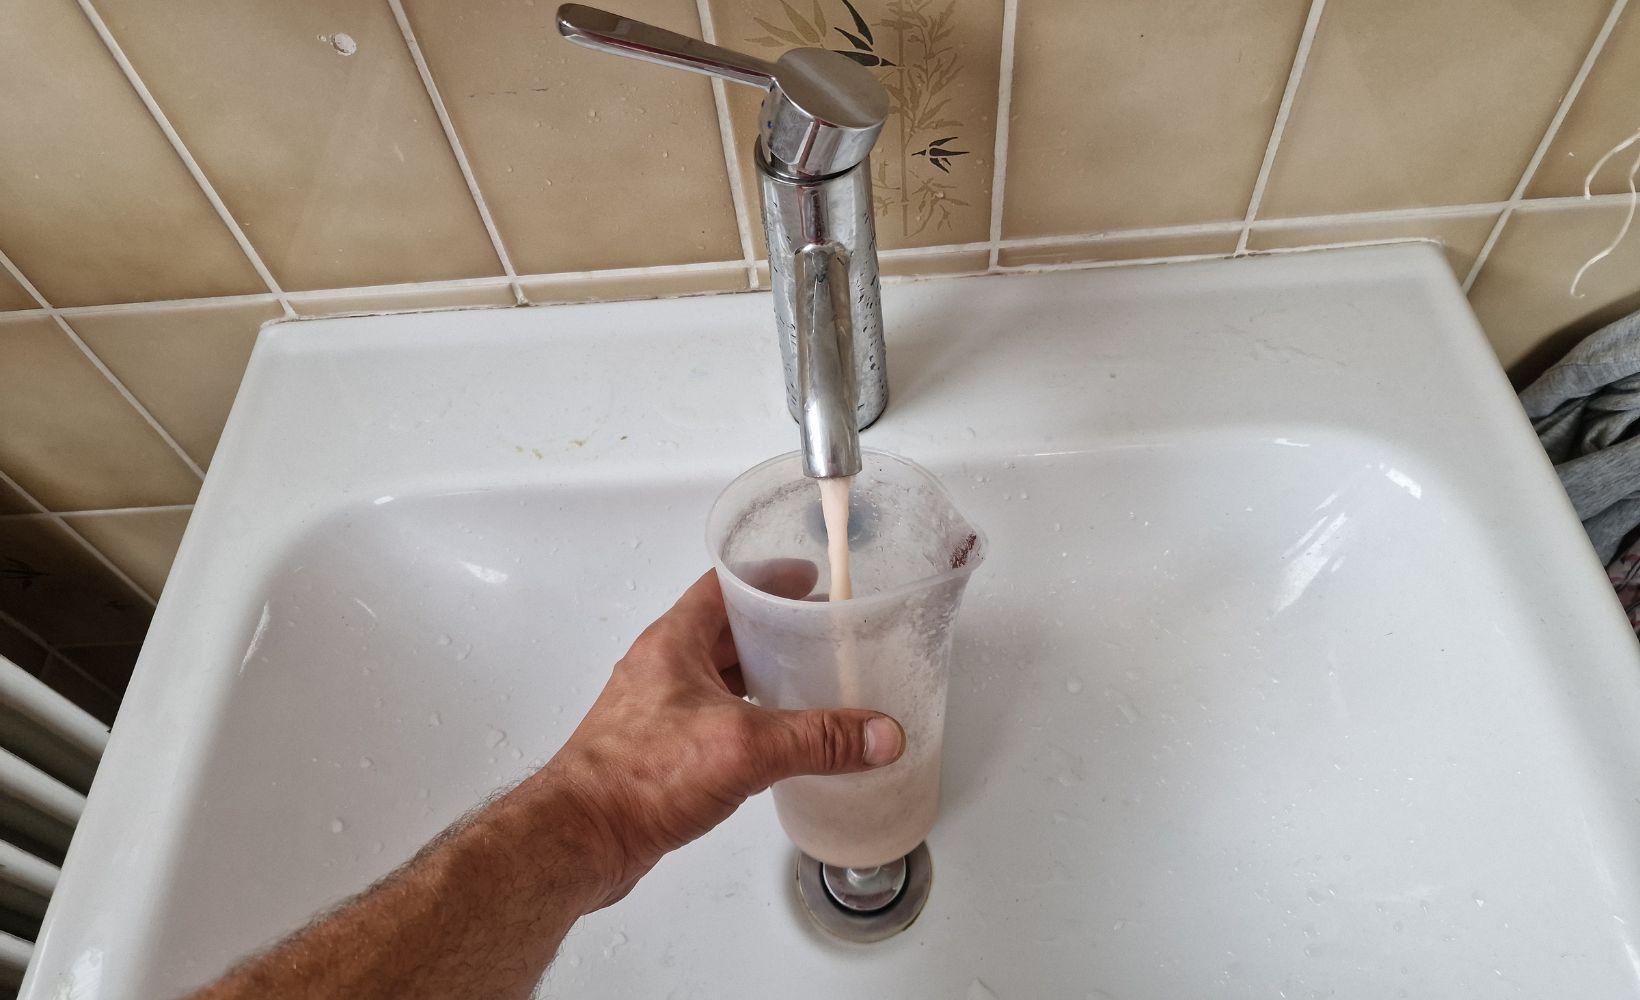 Detartrage probleme d eau chaude salle de bain